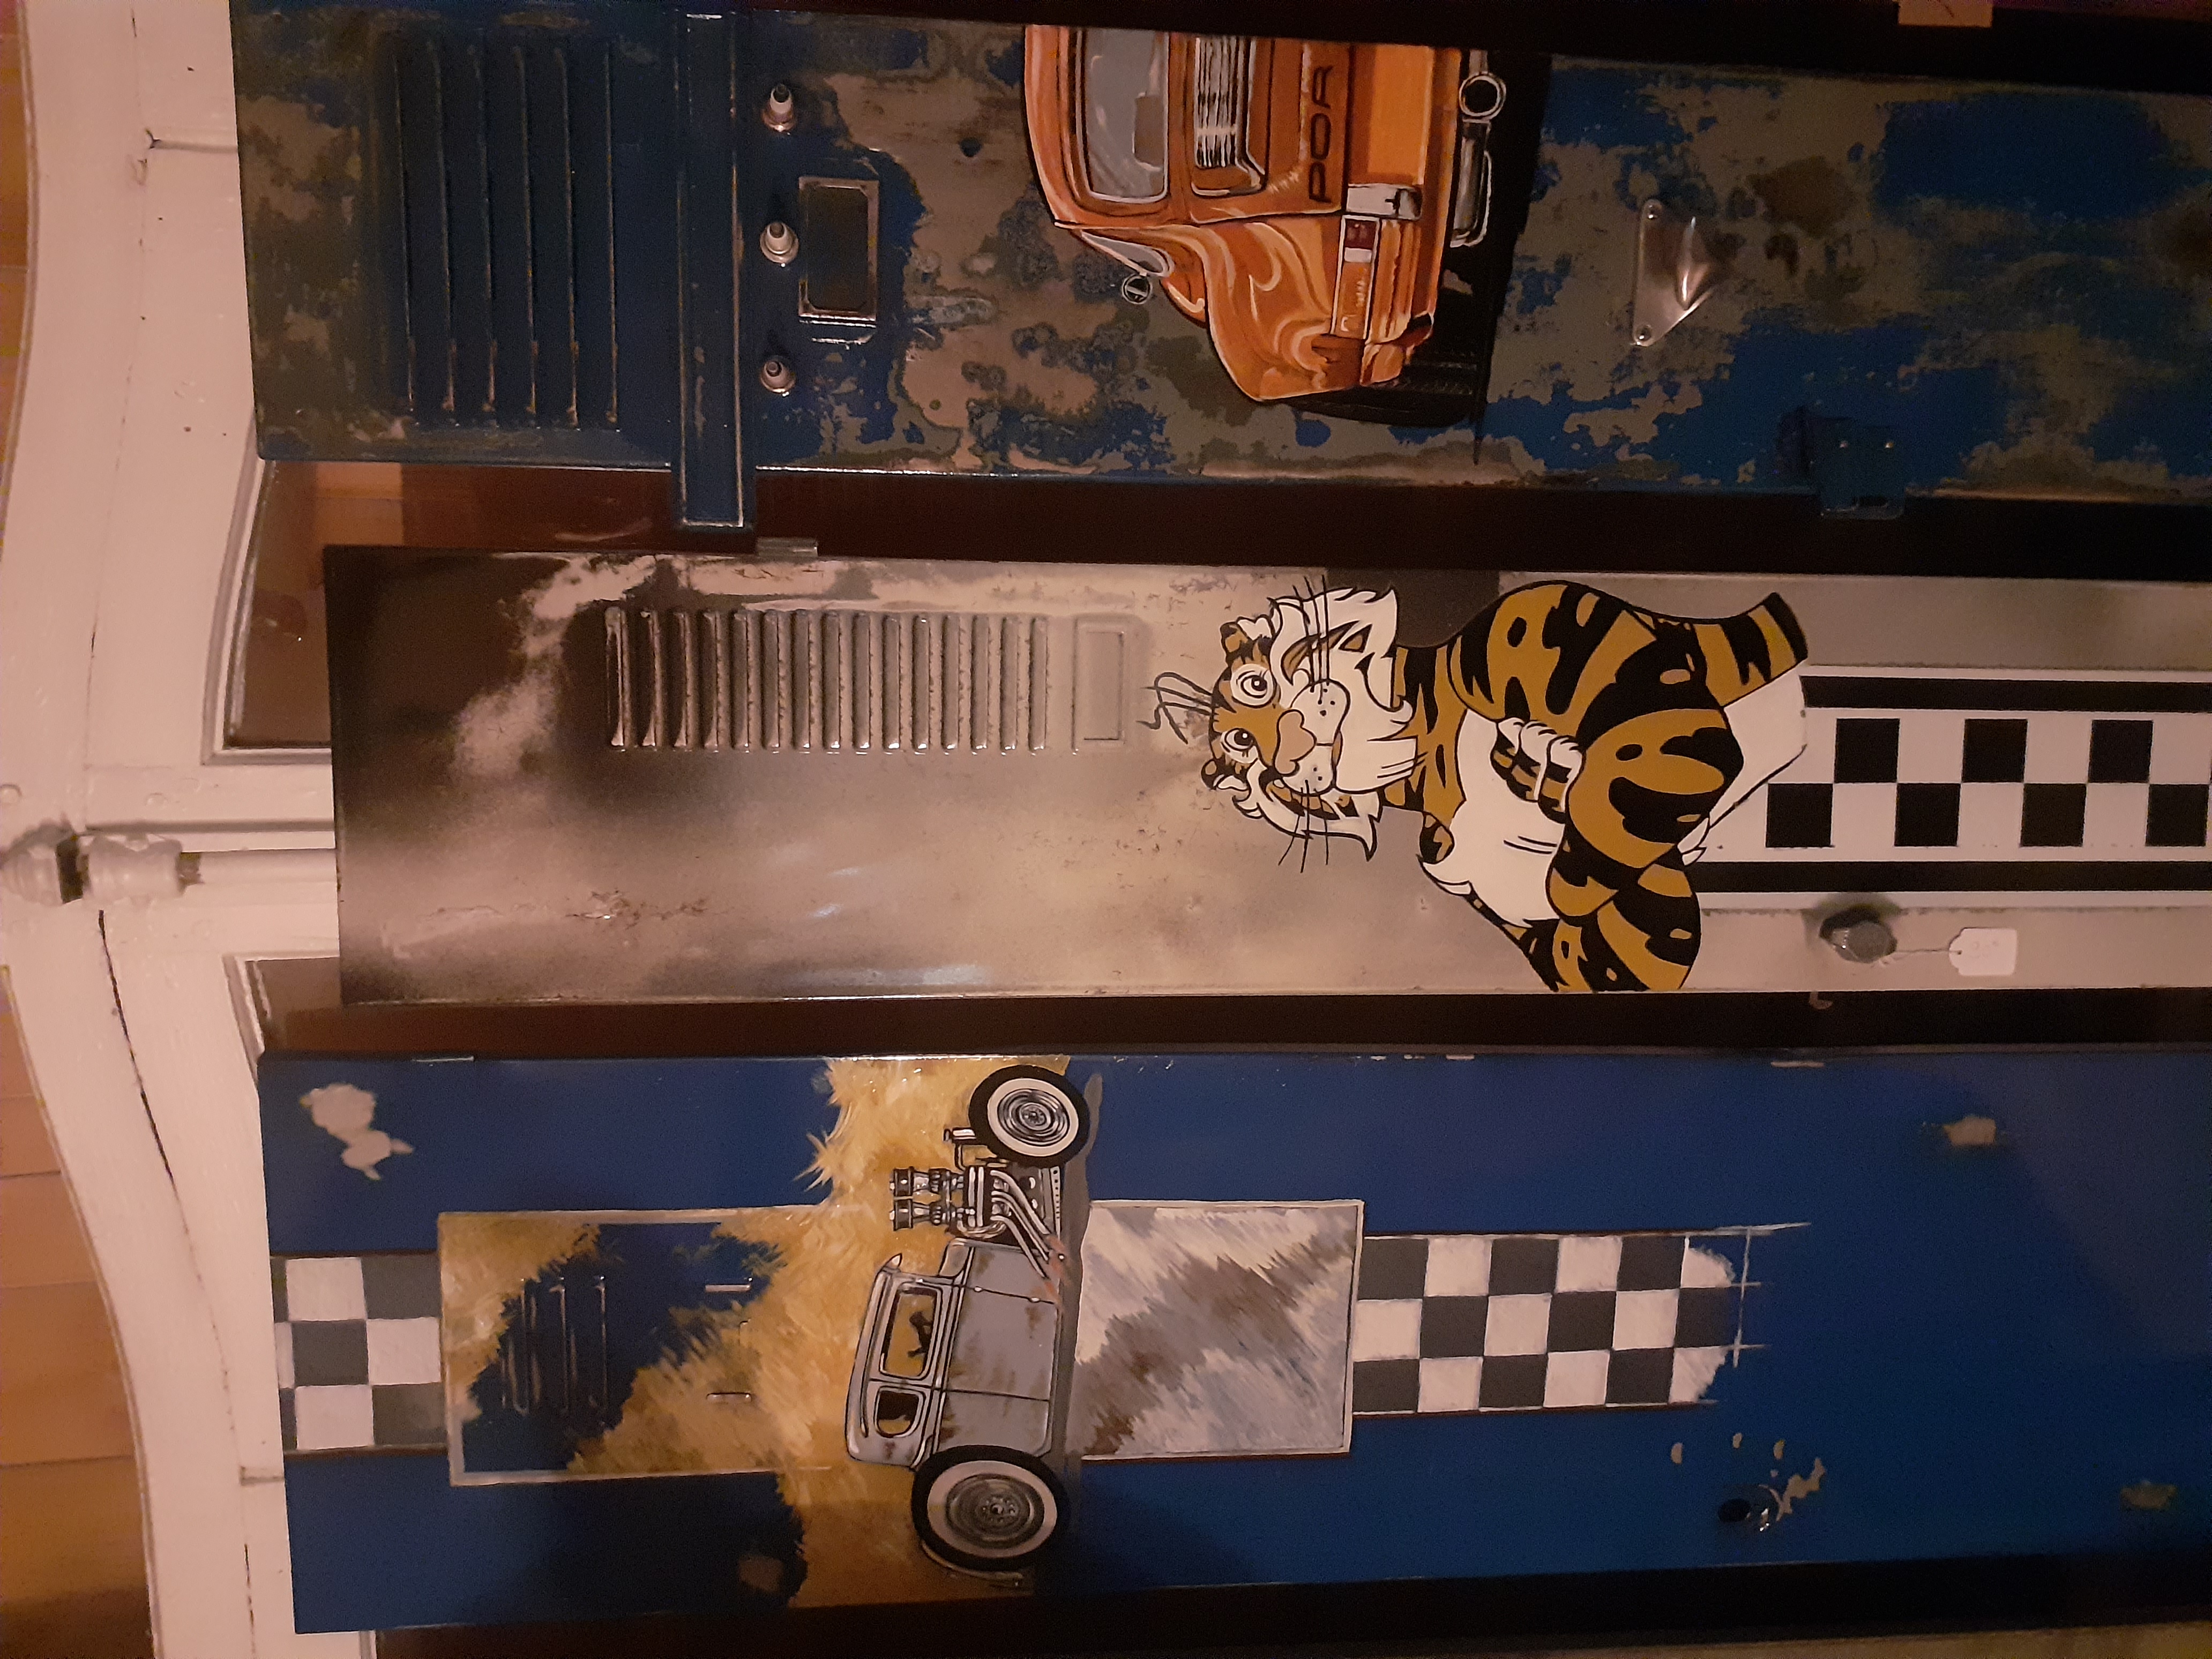 Porte de casier métallique peintes représentant des voiture ou un personnage de pop culture